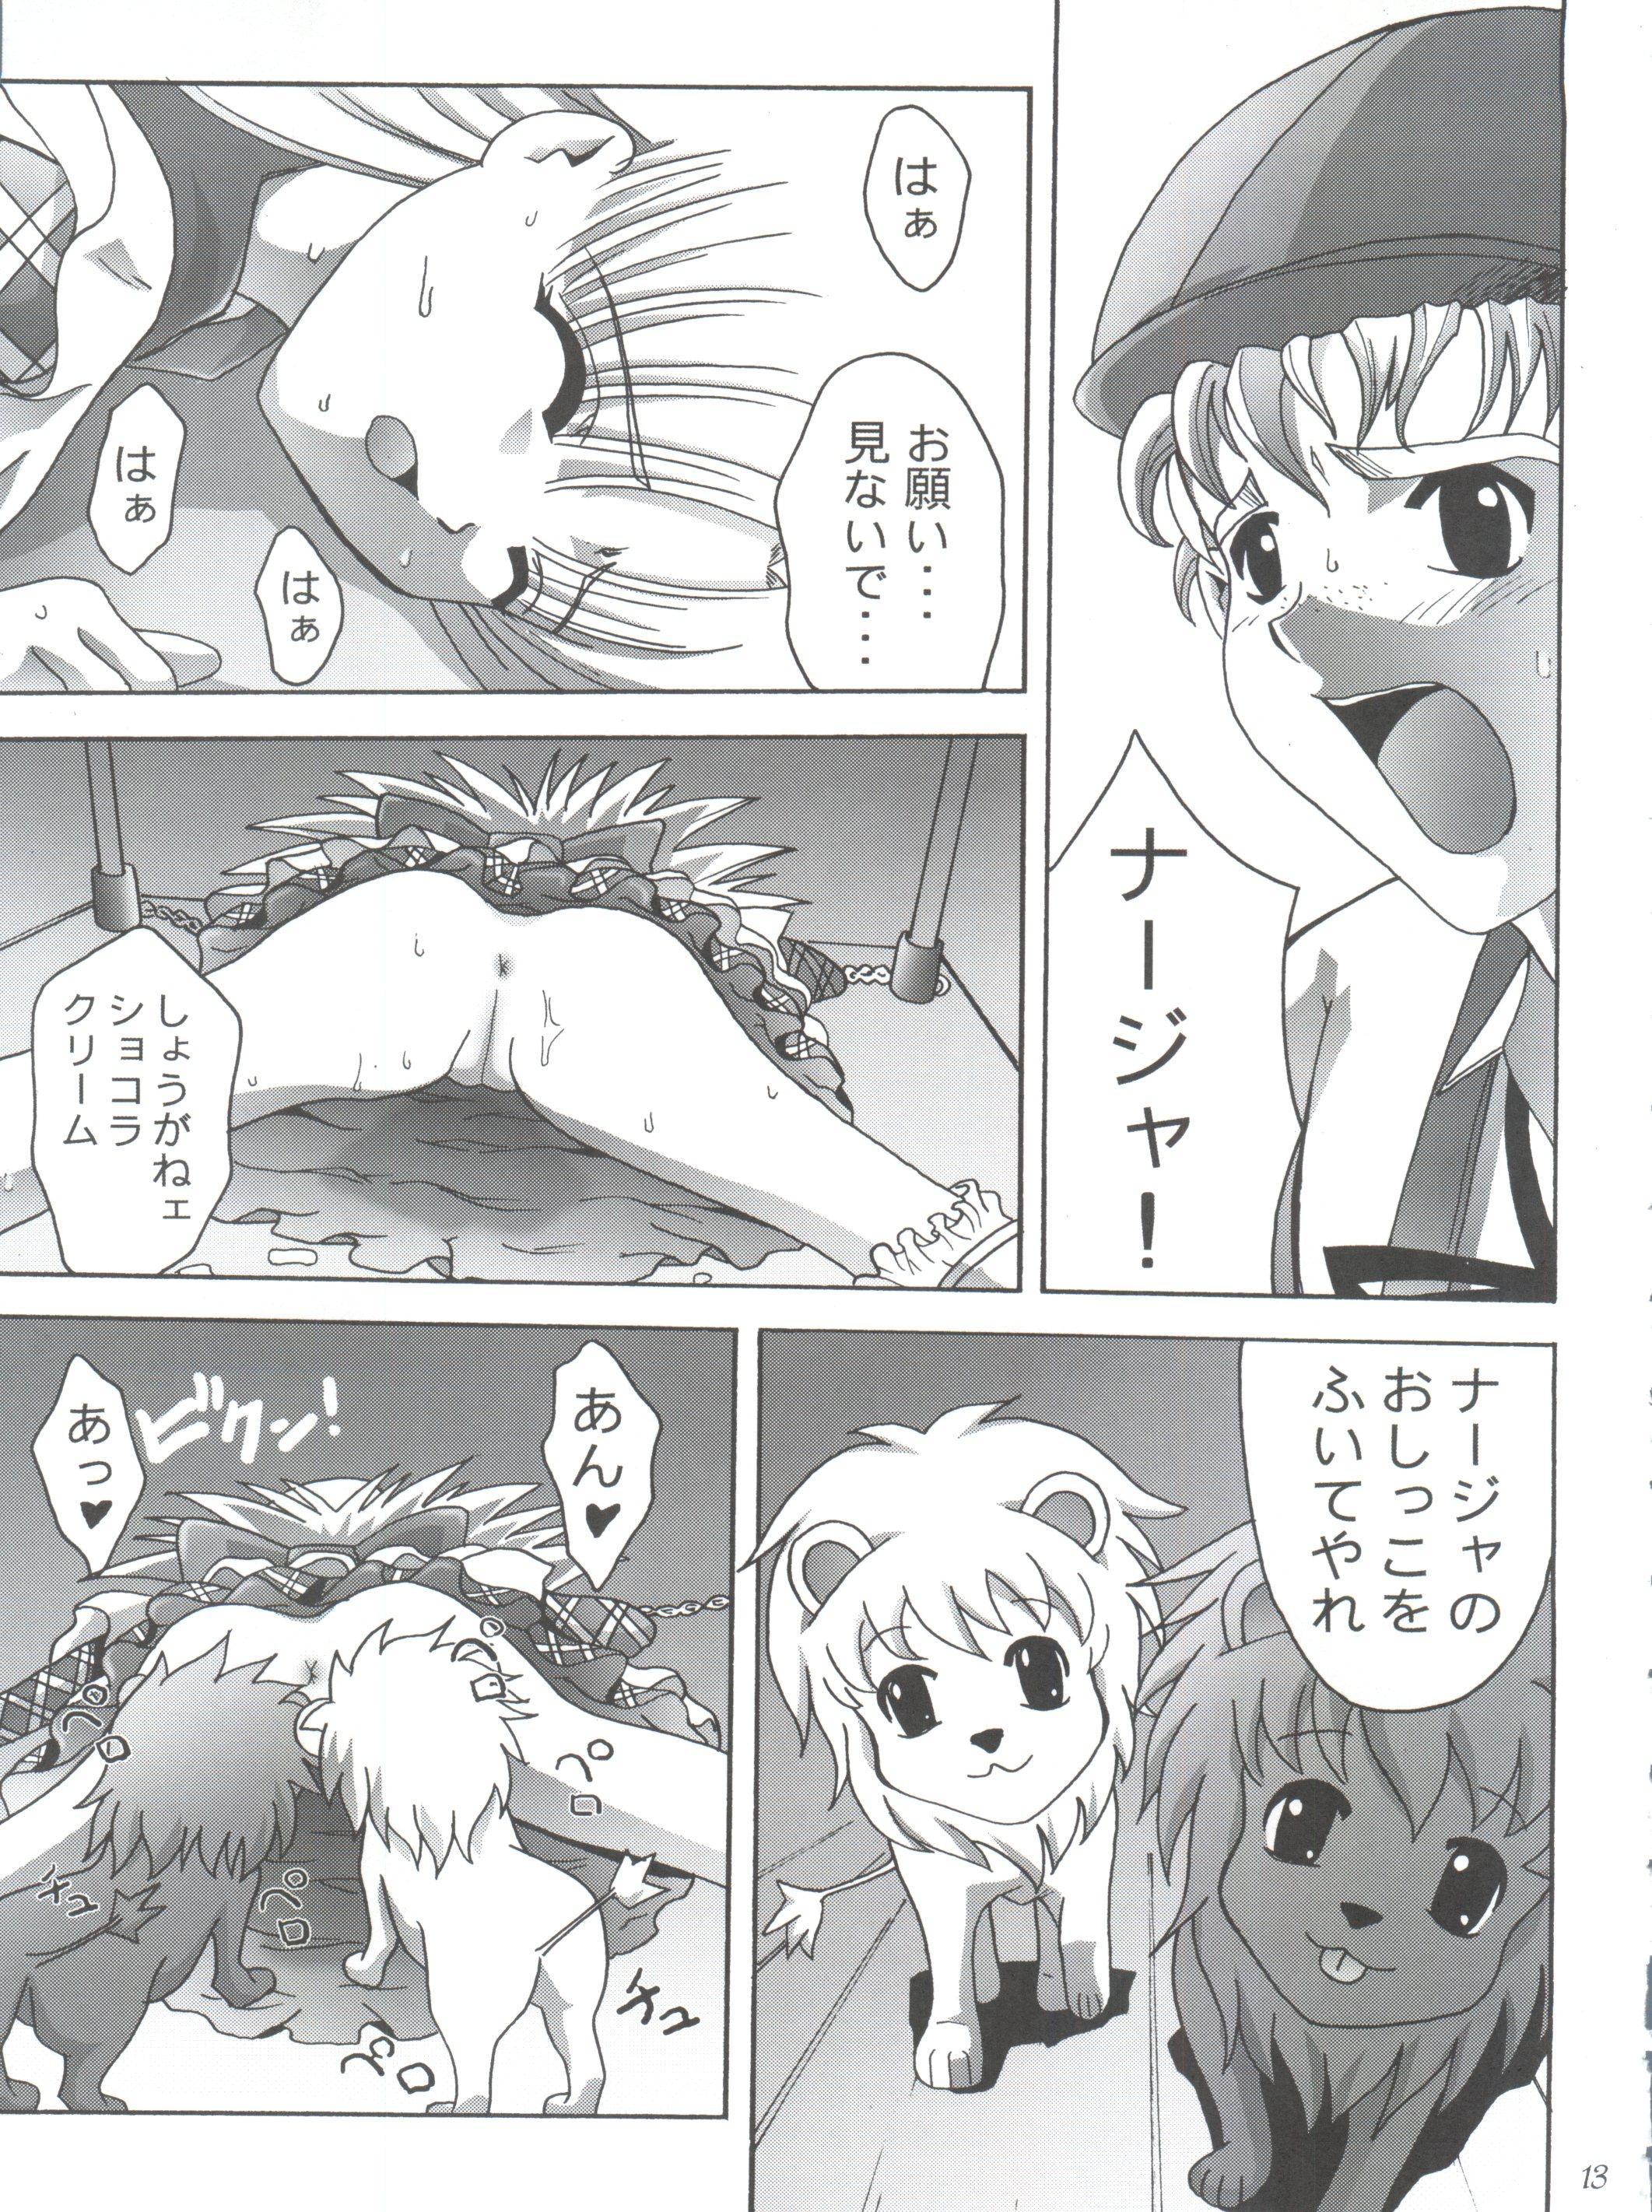 Peluda Michi no Taion - Ashita no nadja POV - Page 12